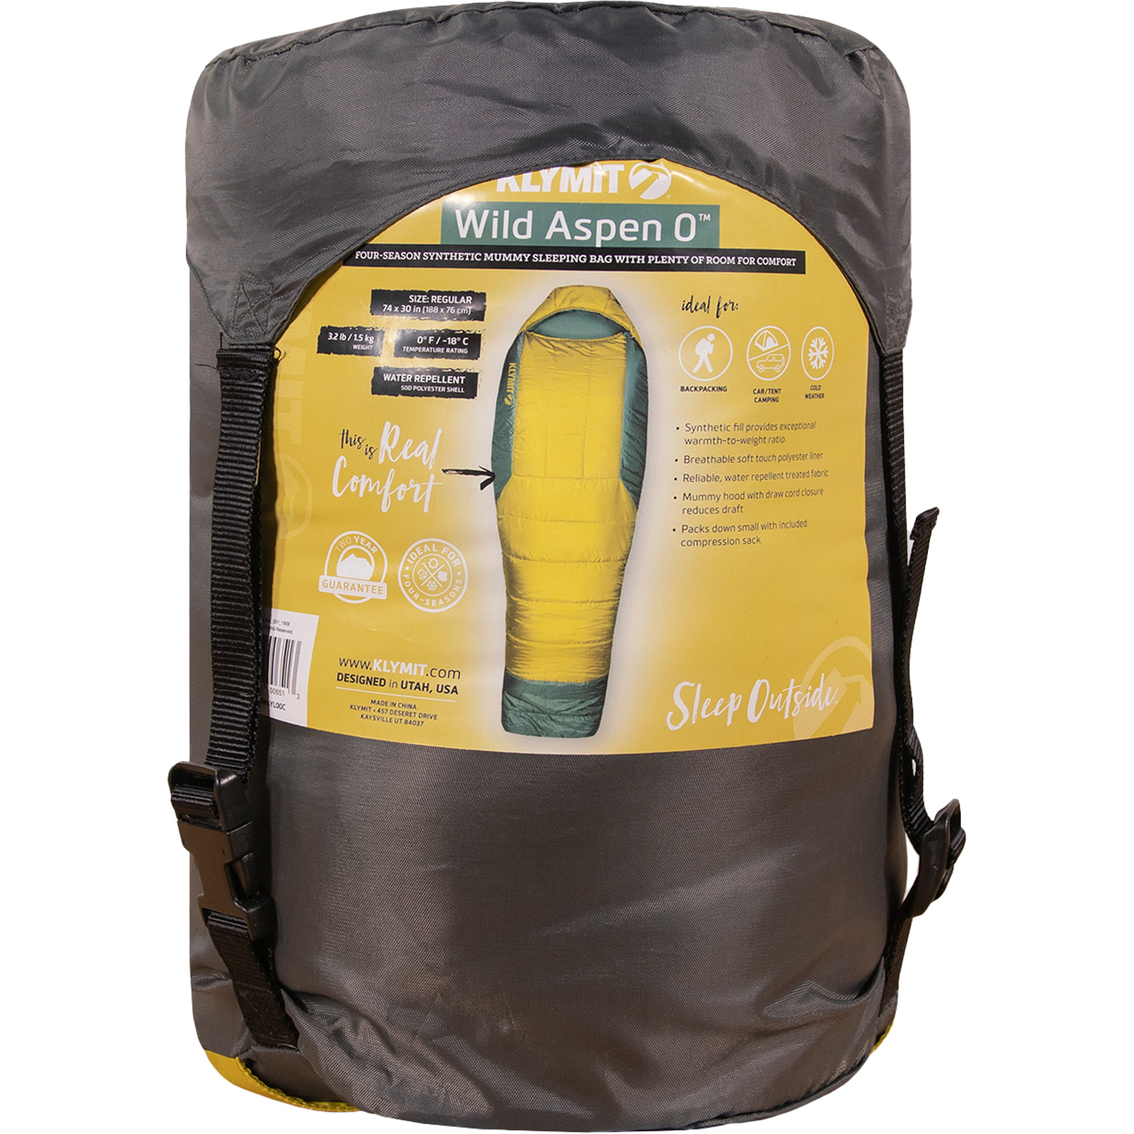 Klymit Wild Aspen 0 Extra Large Sleeping Bag - Image 2 of 8